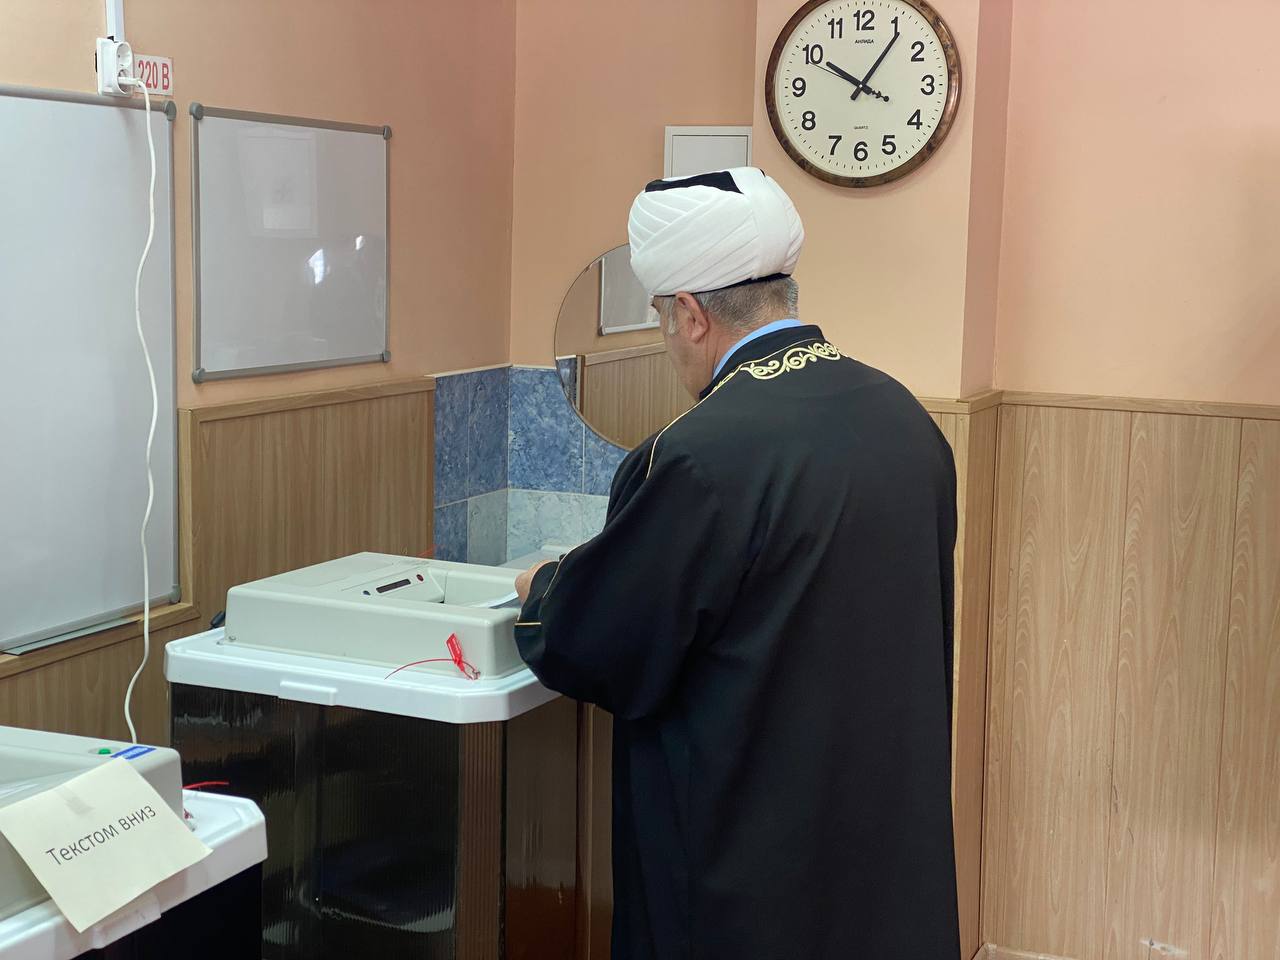 Председатель ДУМНО Гаяз-хазрат Закиров принял участие в голосовании на избирательном участке